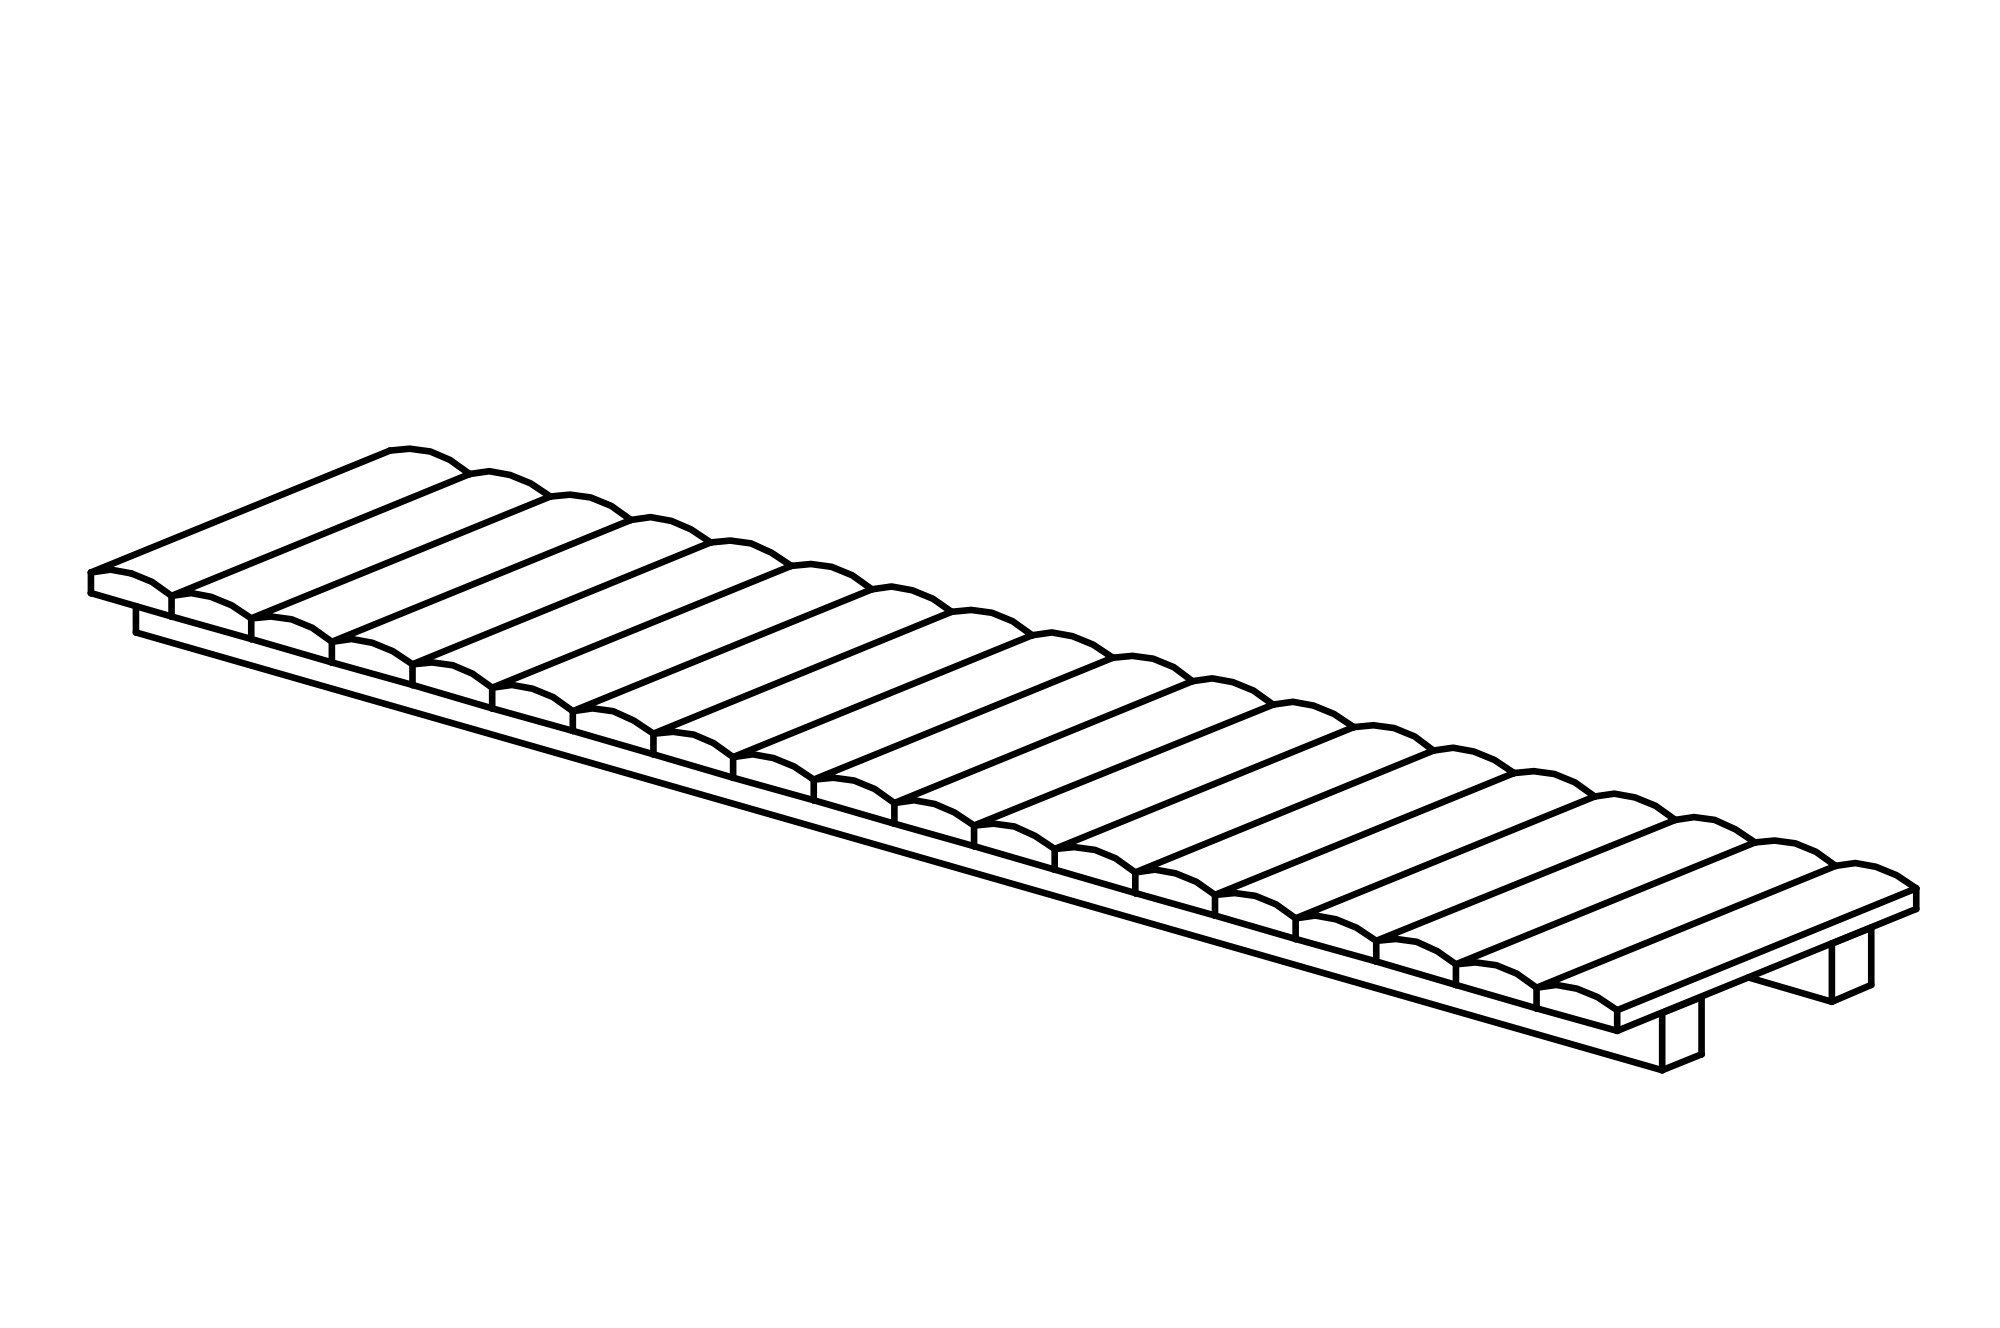 Bridge without handrails, length = 3 m